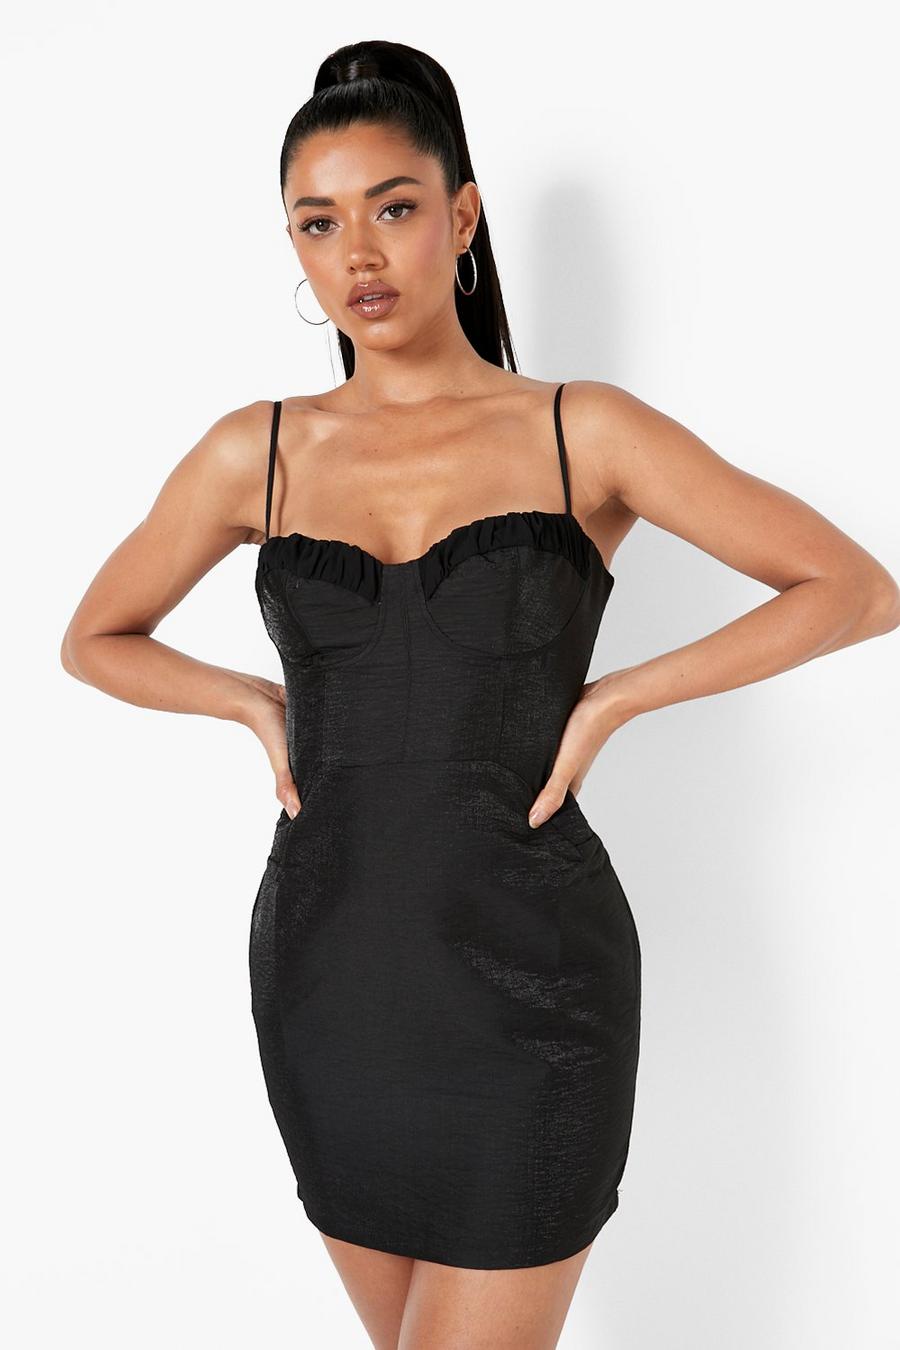 שחור black שמלת מיני עם עיטור מחוך